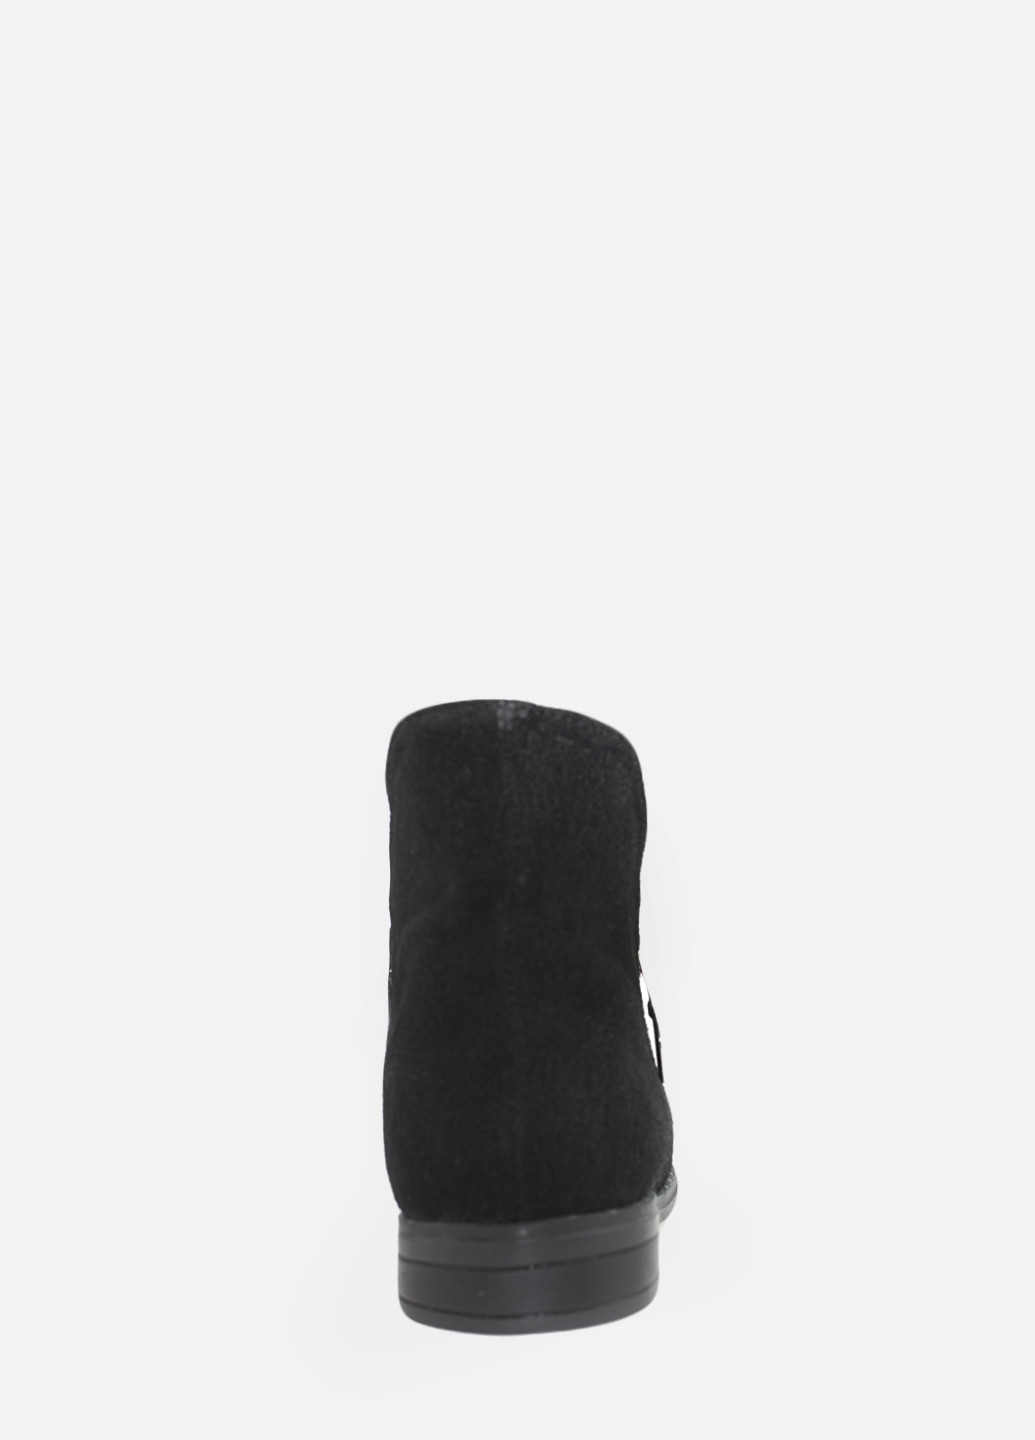 Осенние ботинки rhit552-1z-11 черный Hitcher из натуральной замши